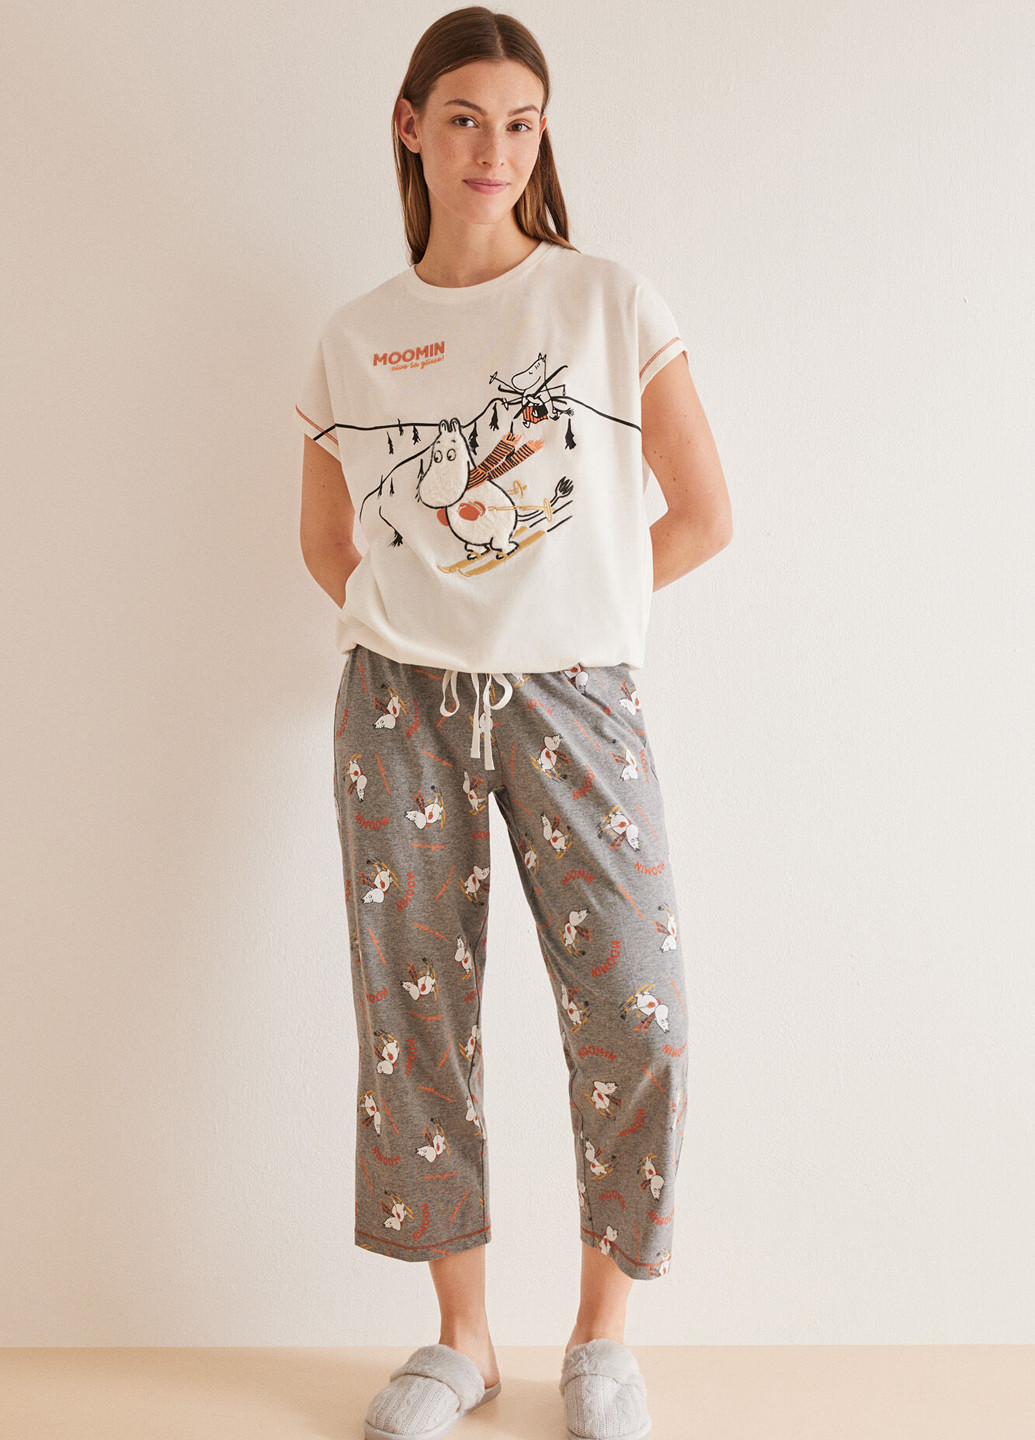 Комбинированная всесезон пижама (футболка, капри) футболка + капри Women'secret